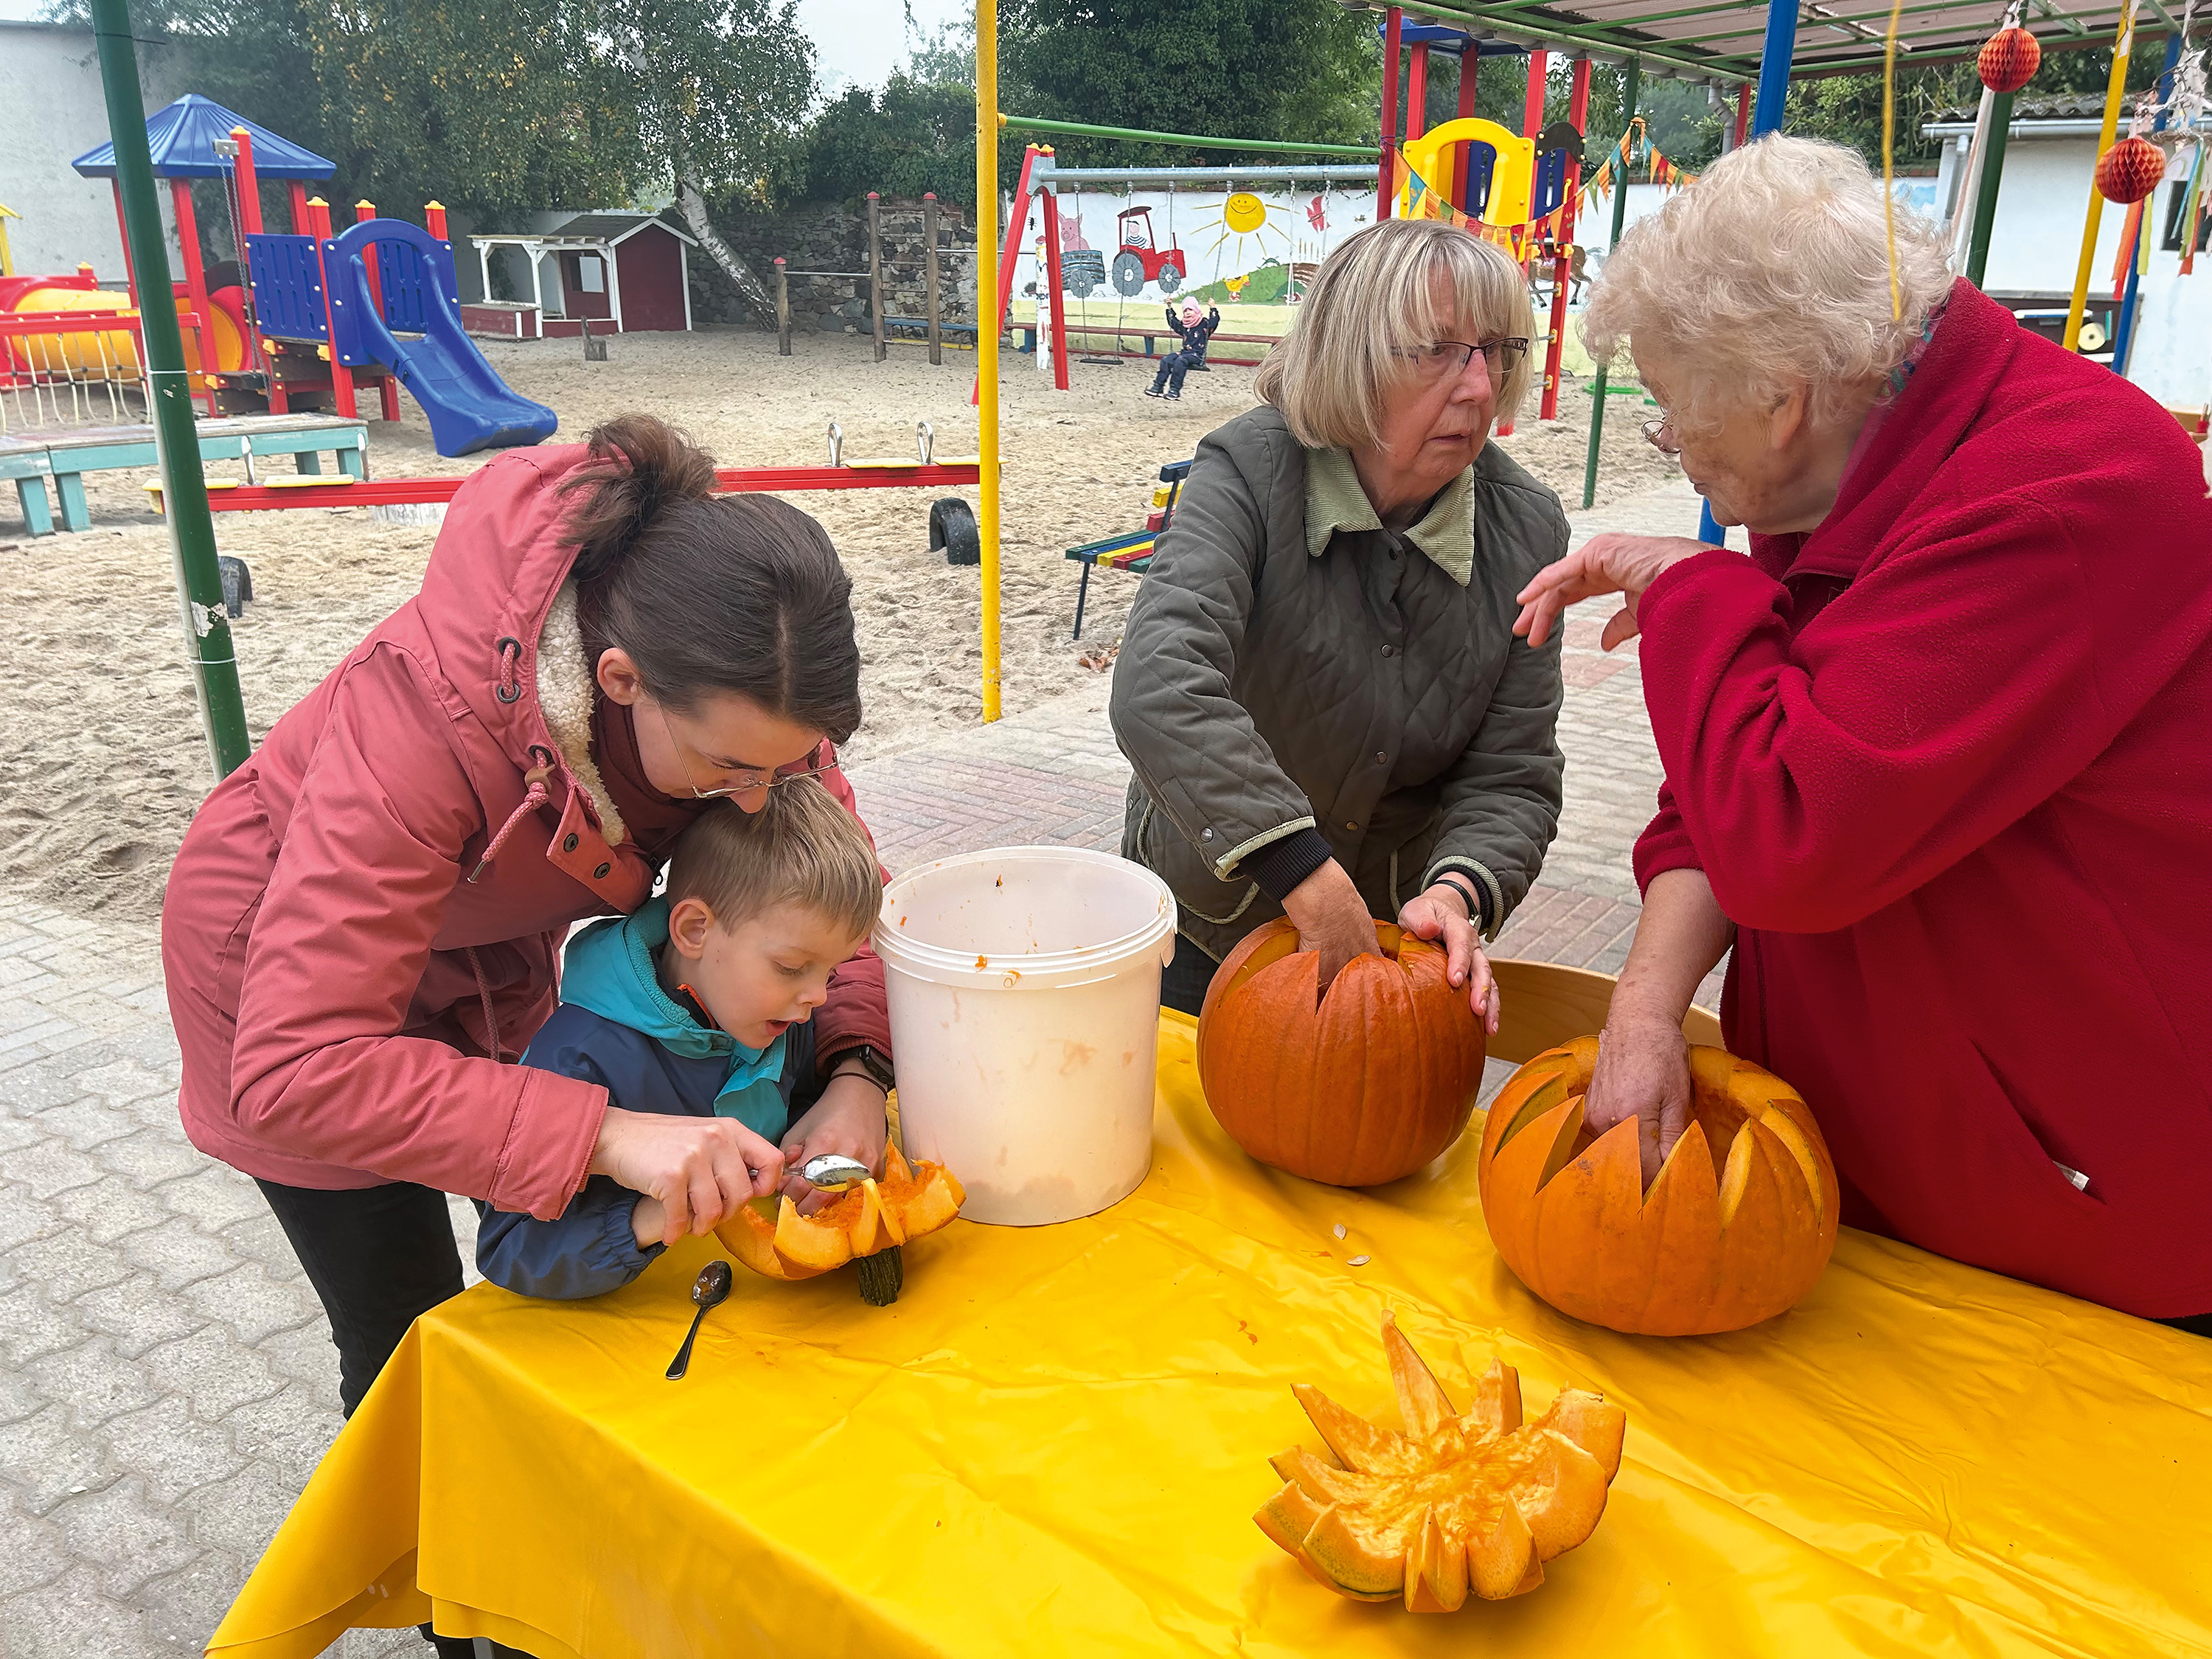 Eine Frau hilft einem Kind dabei an einem Kürbis zuschnitzen, während zwei ältere Frauen sich am selben Tisch unterhalten und auch jeweils einen Kürbis bearbeiten.